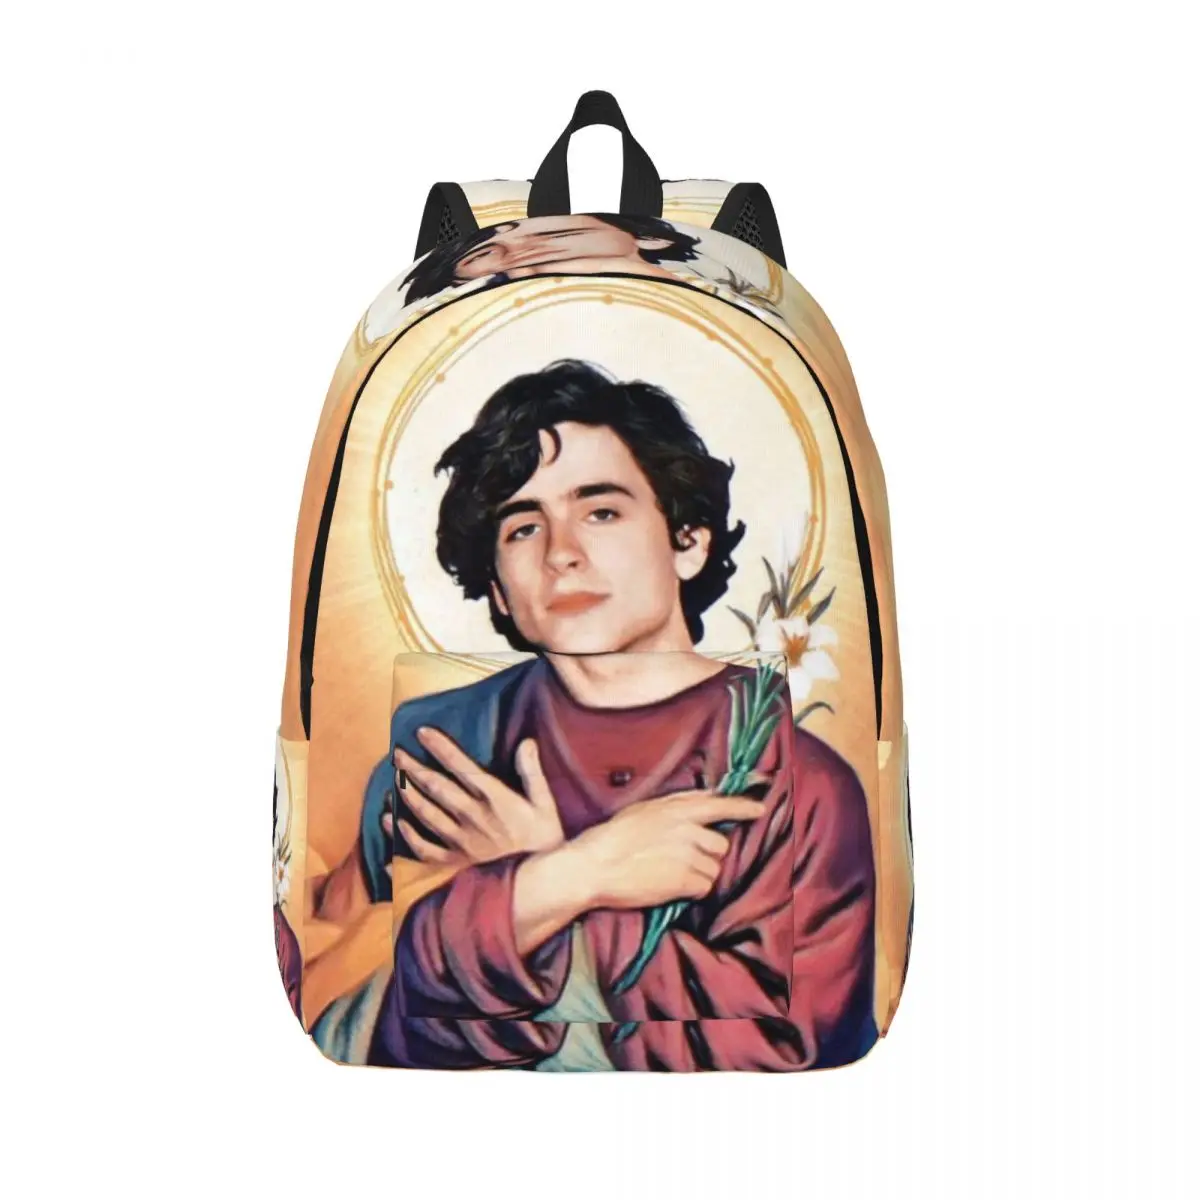 

Saint Timothee Chalamet Travel Canvas Backpack Men Women School Computer Bookbag 90s TV Actor College Student Daypack Bags